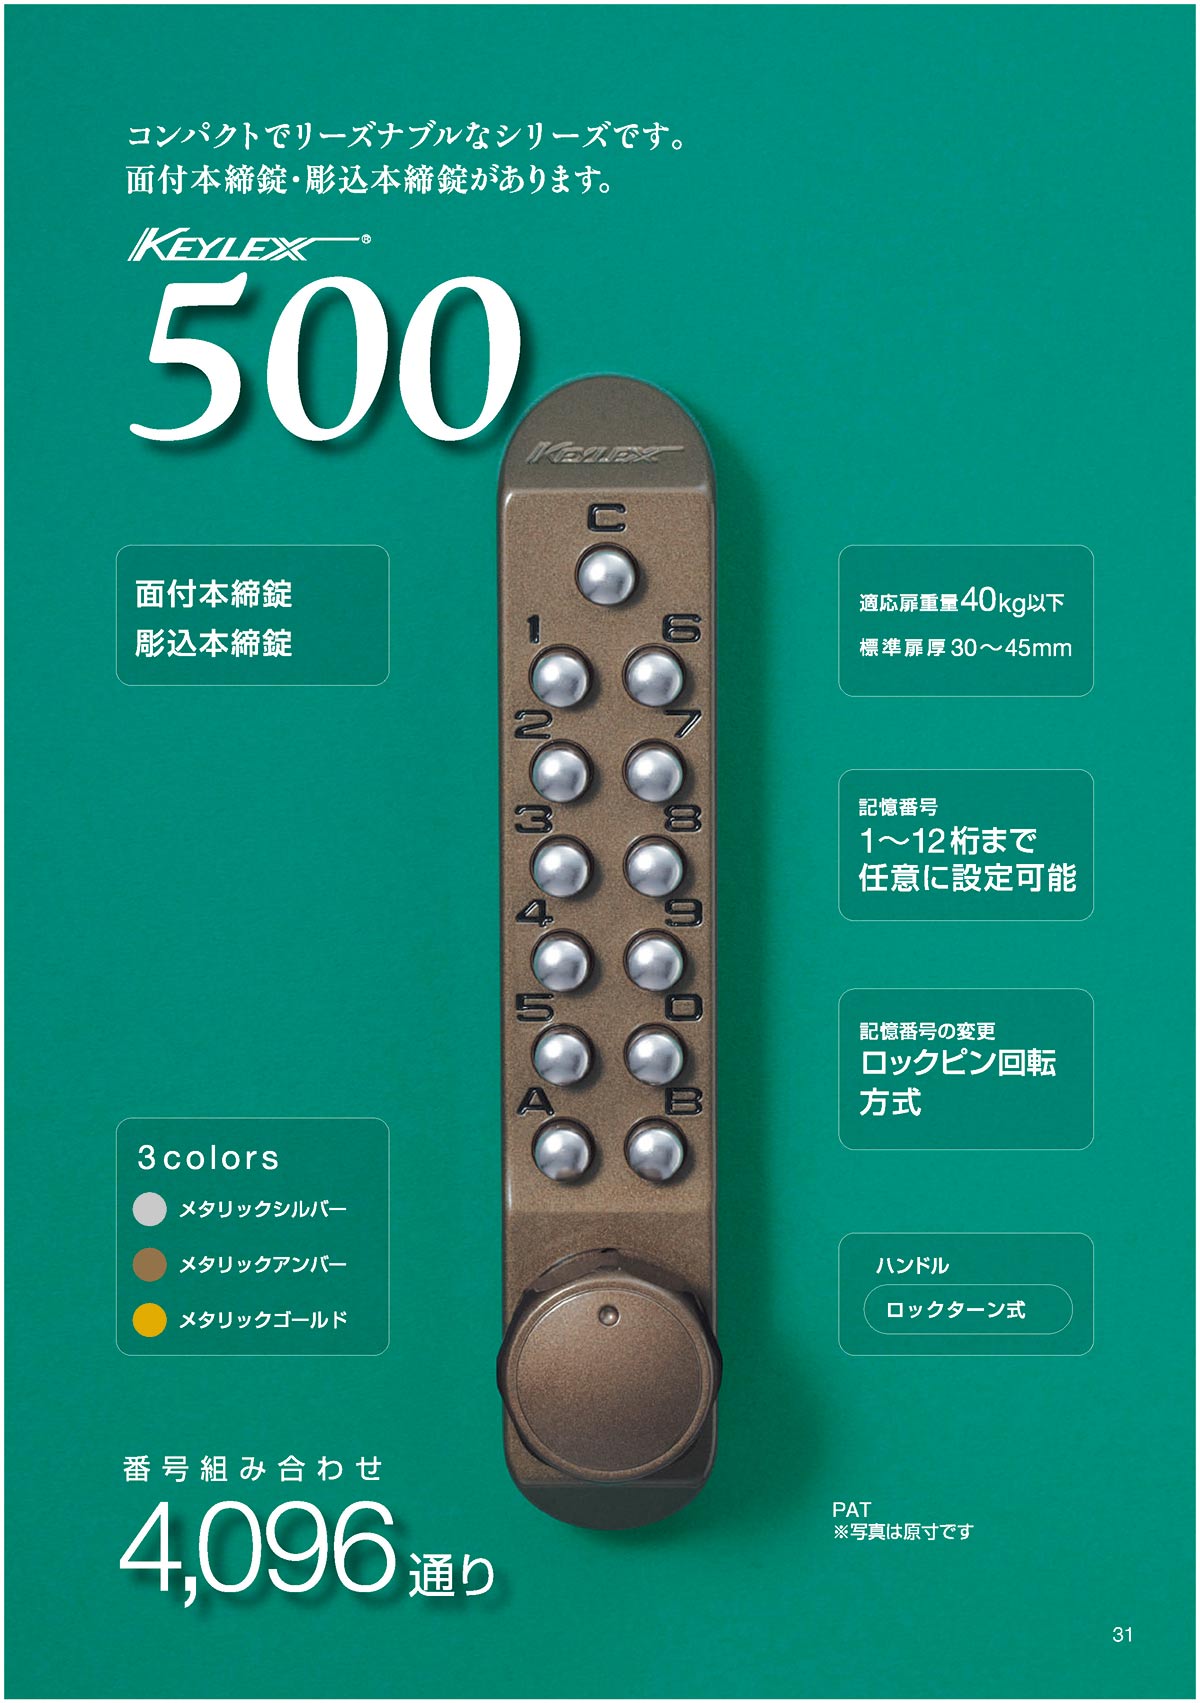 長沢製作所 KEYLEX22270 キーレックス 500 メタリックシルバー-